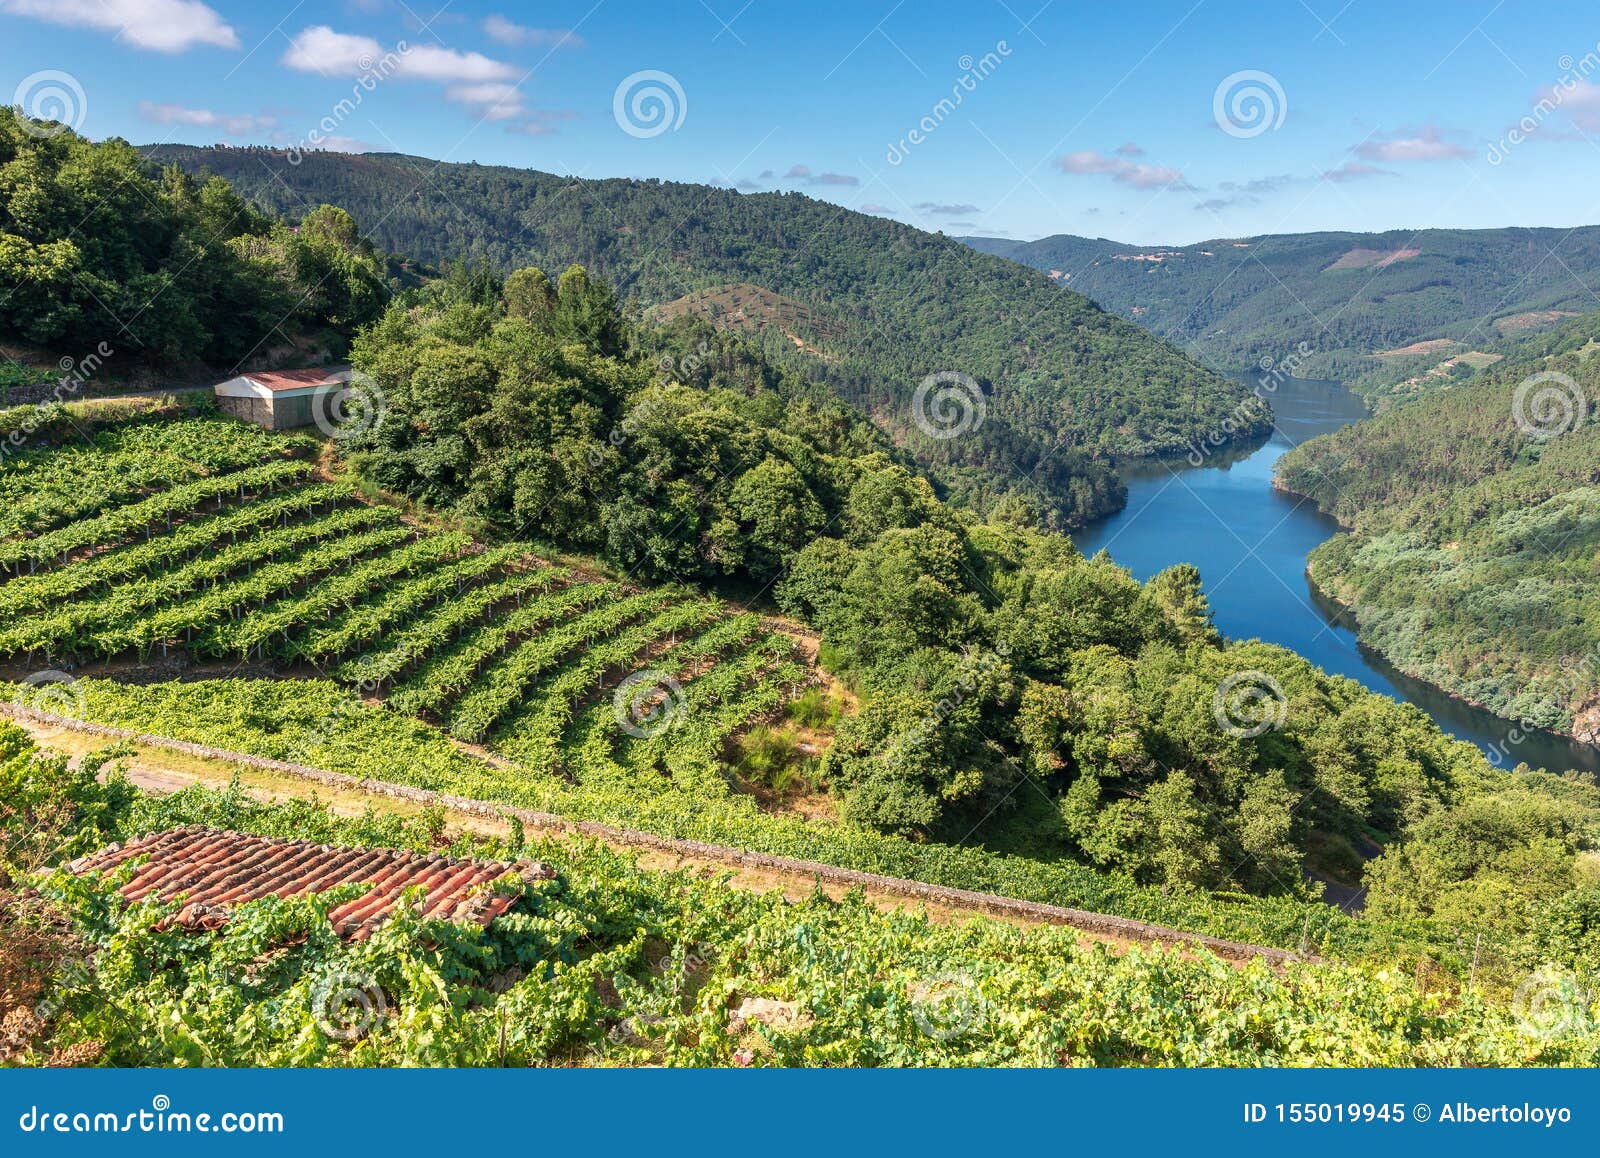 vineyards along minho river, ribeira sacra in lugo province, spain